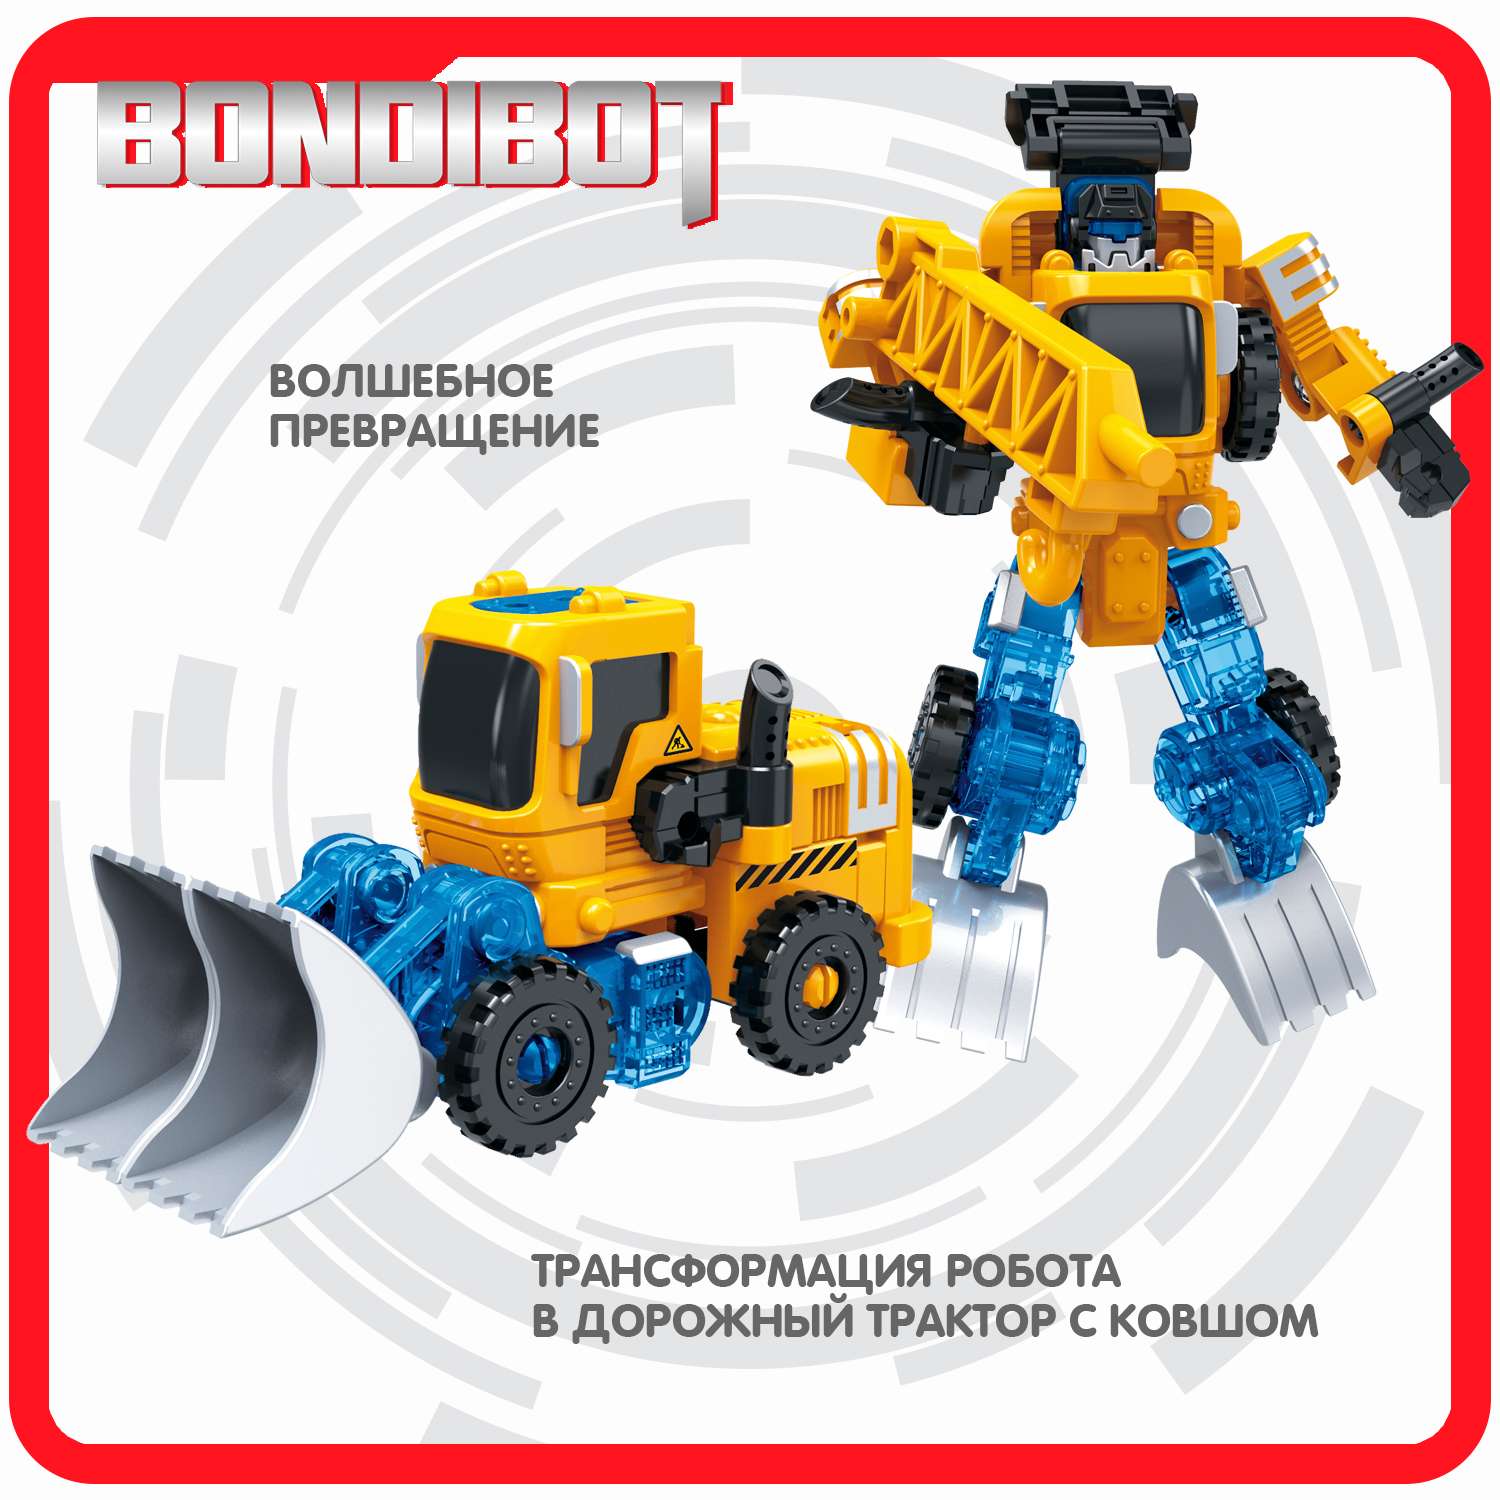 Трансформер BONDIBON BONDIBOT 2в1 робот- дорожный трактор с ковшом жёлтого цвета - фото 4